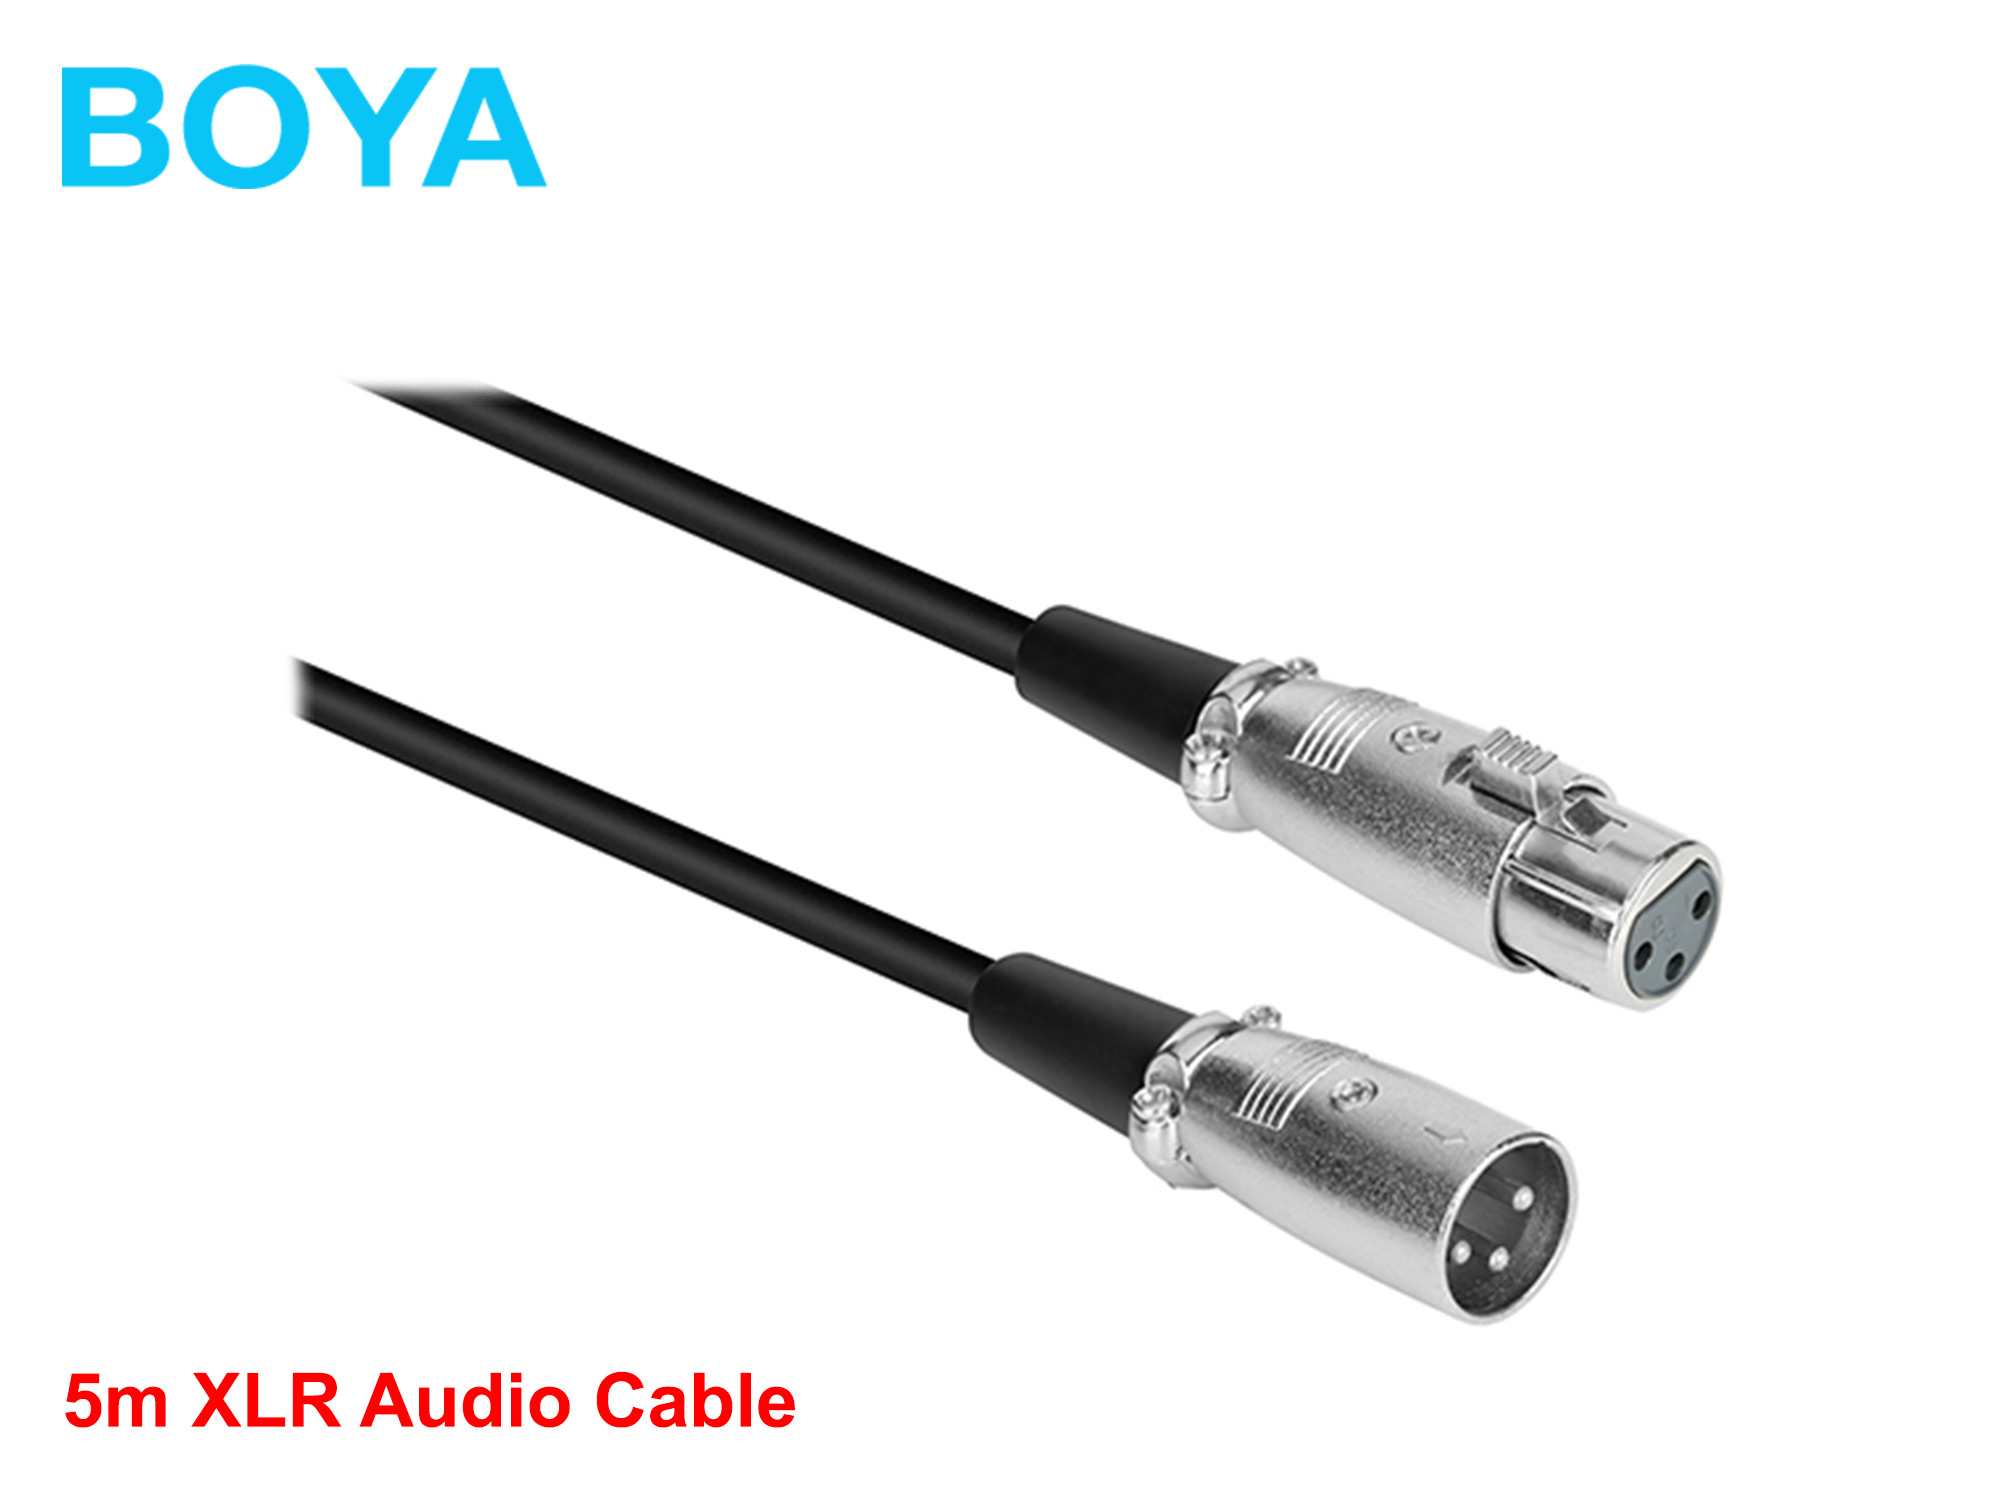 Boya XLR Audio Cable 5m